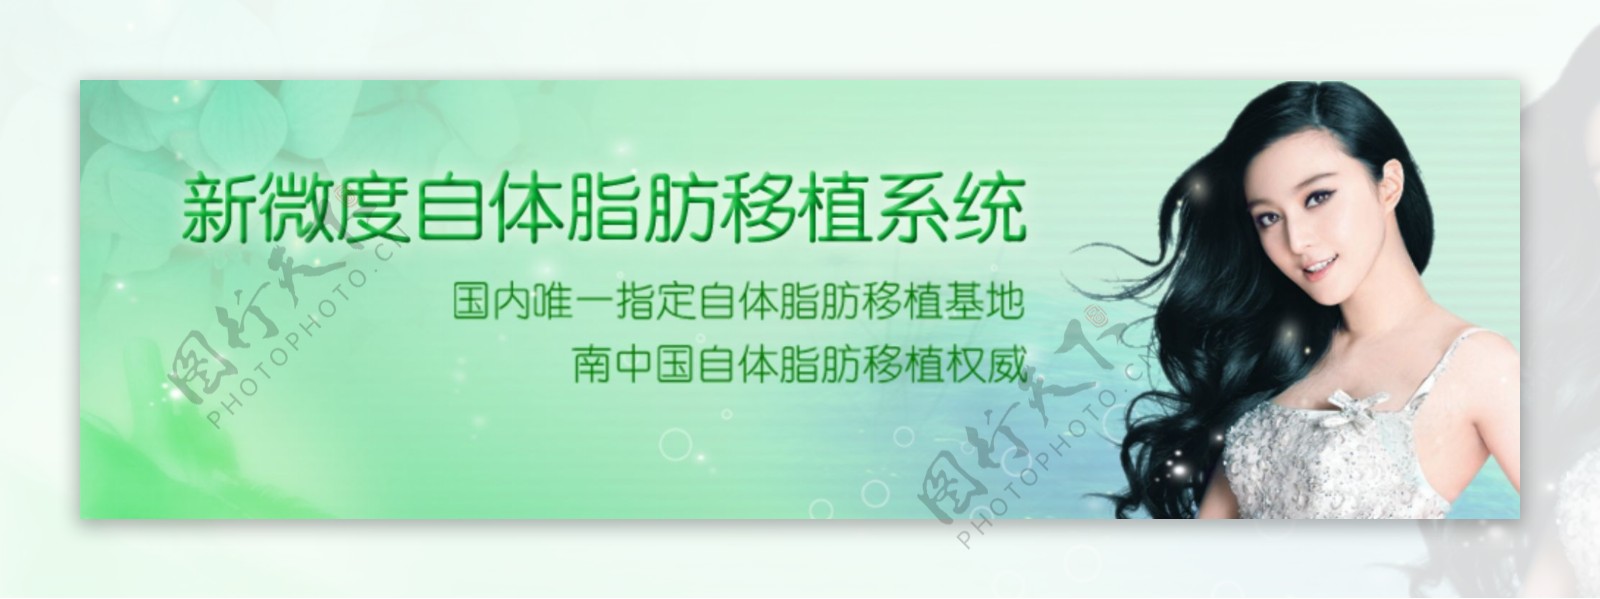 绿色网页banner图片